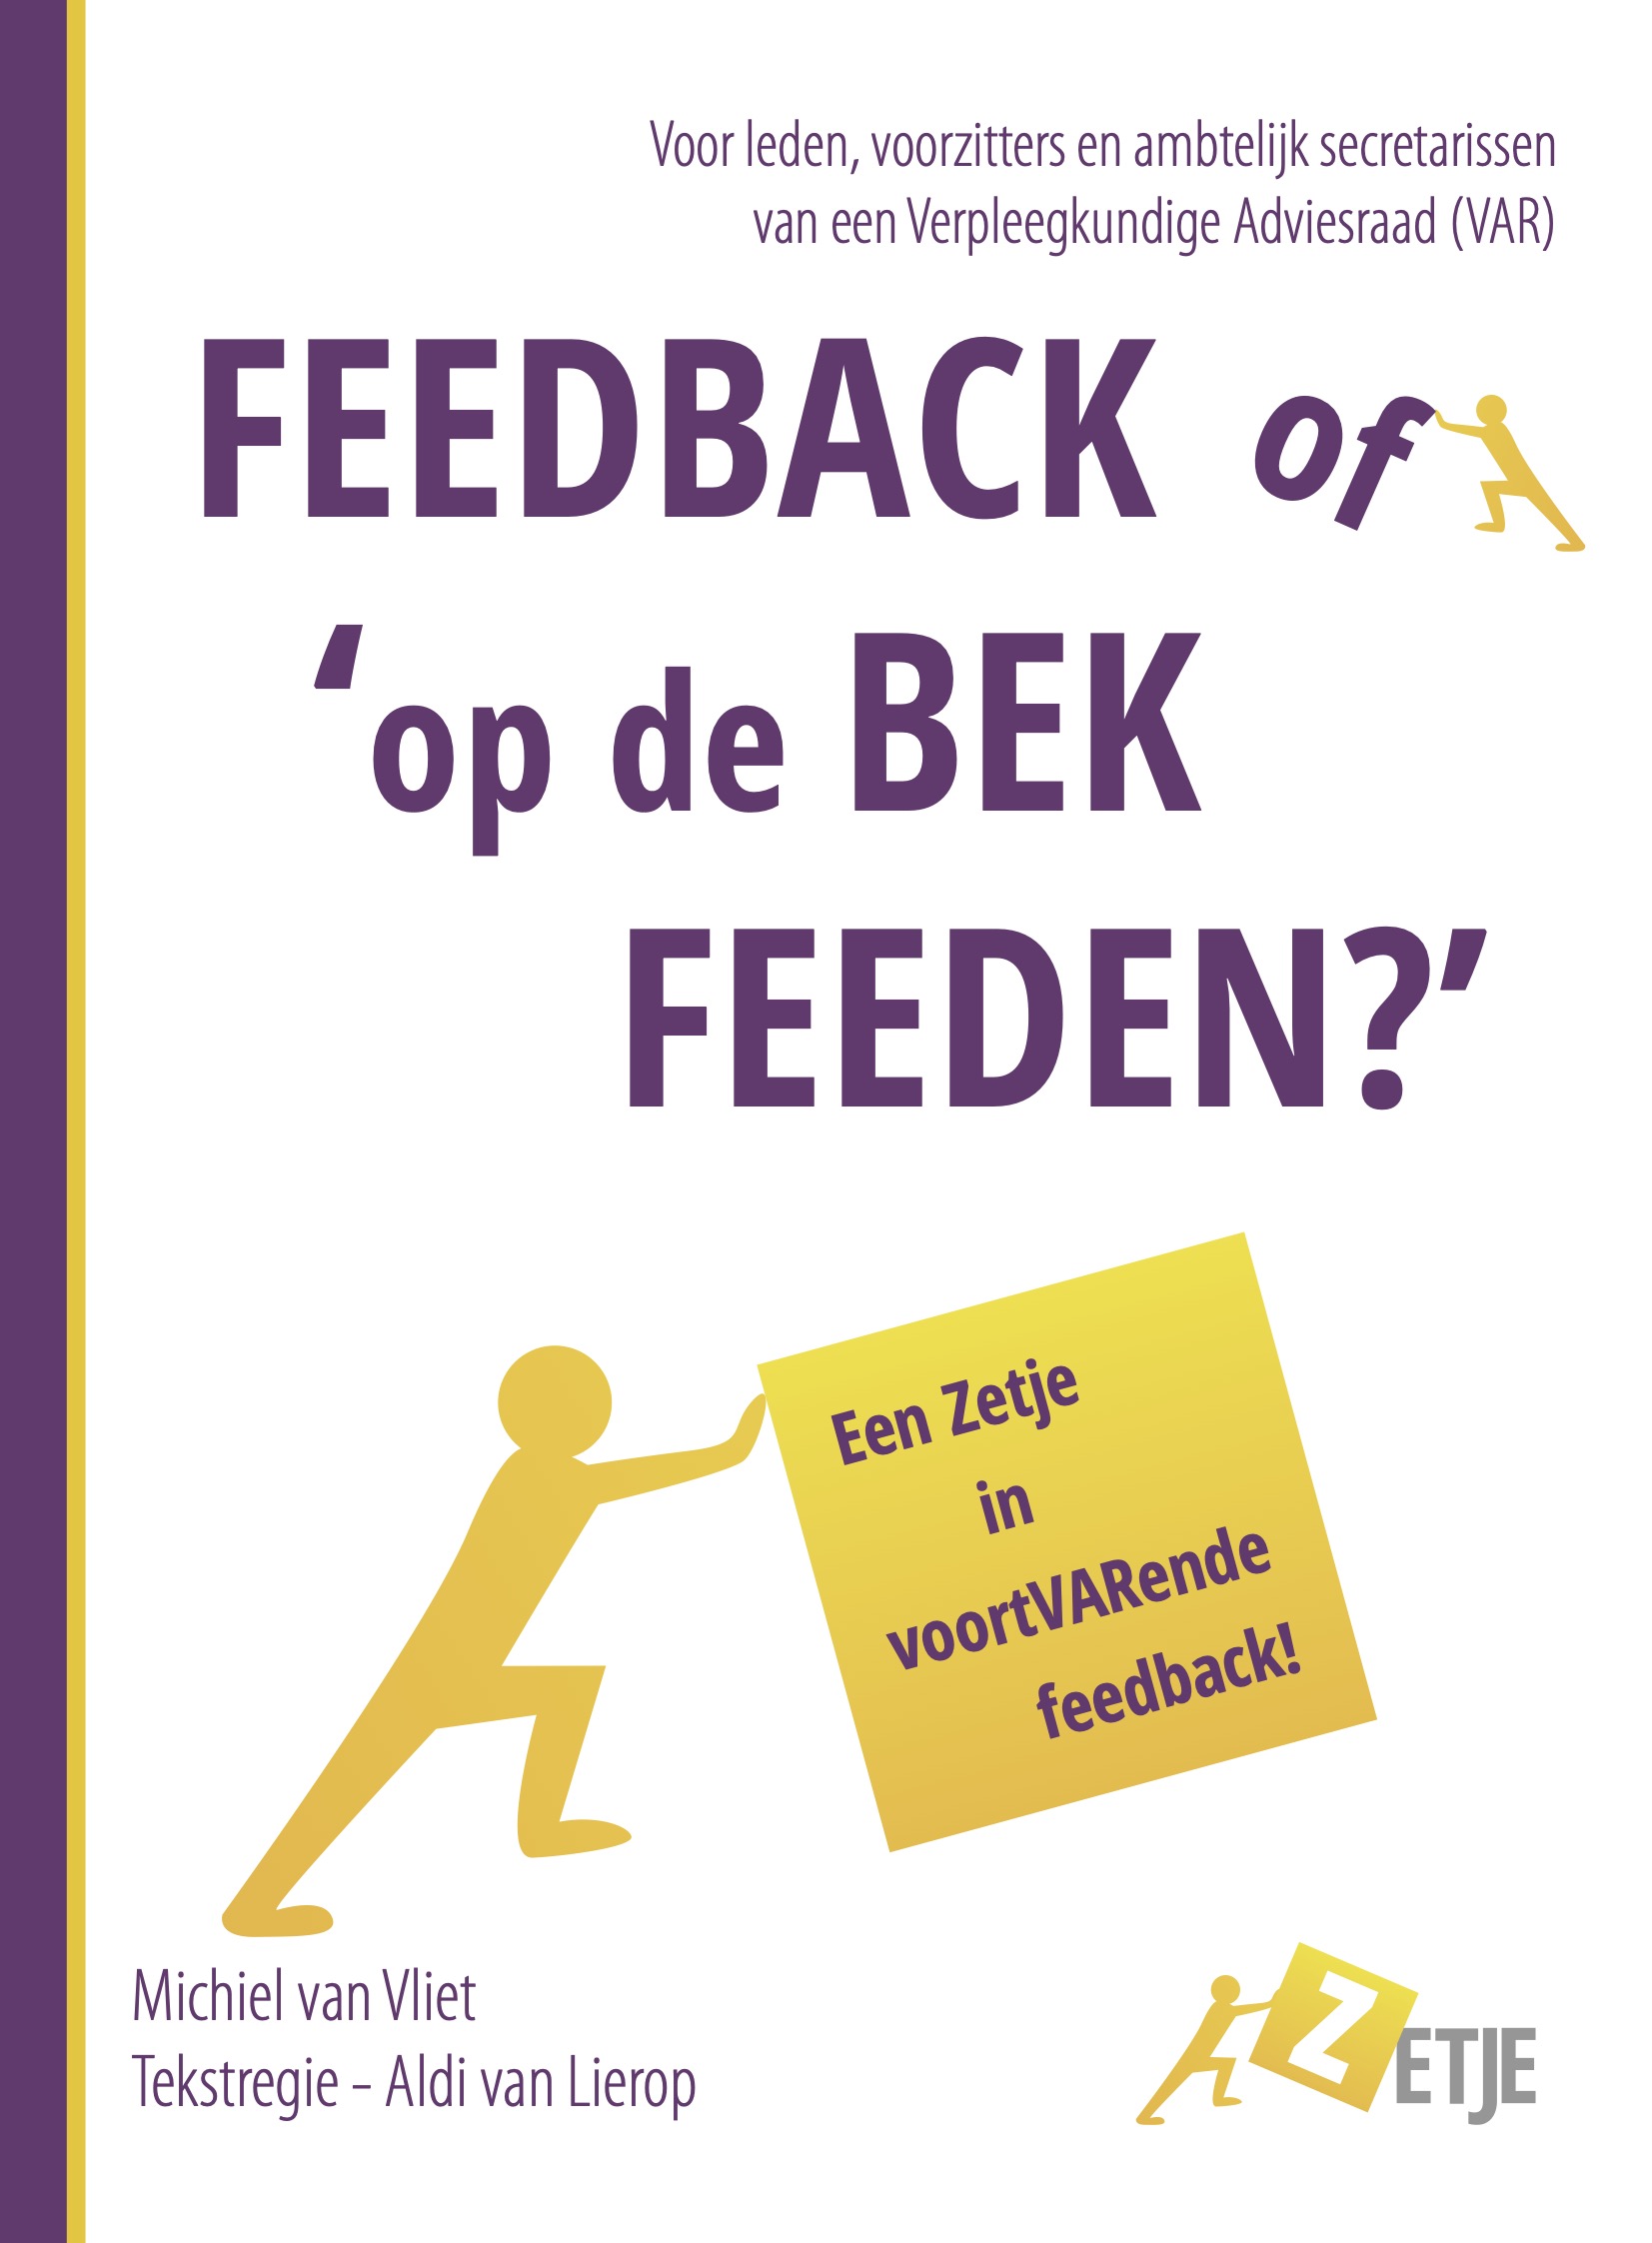 ‘Feedback of op de bek feeden’; een Zetje in voortvarende feedback!